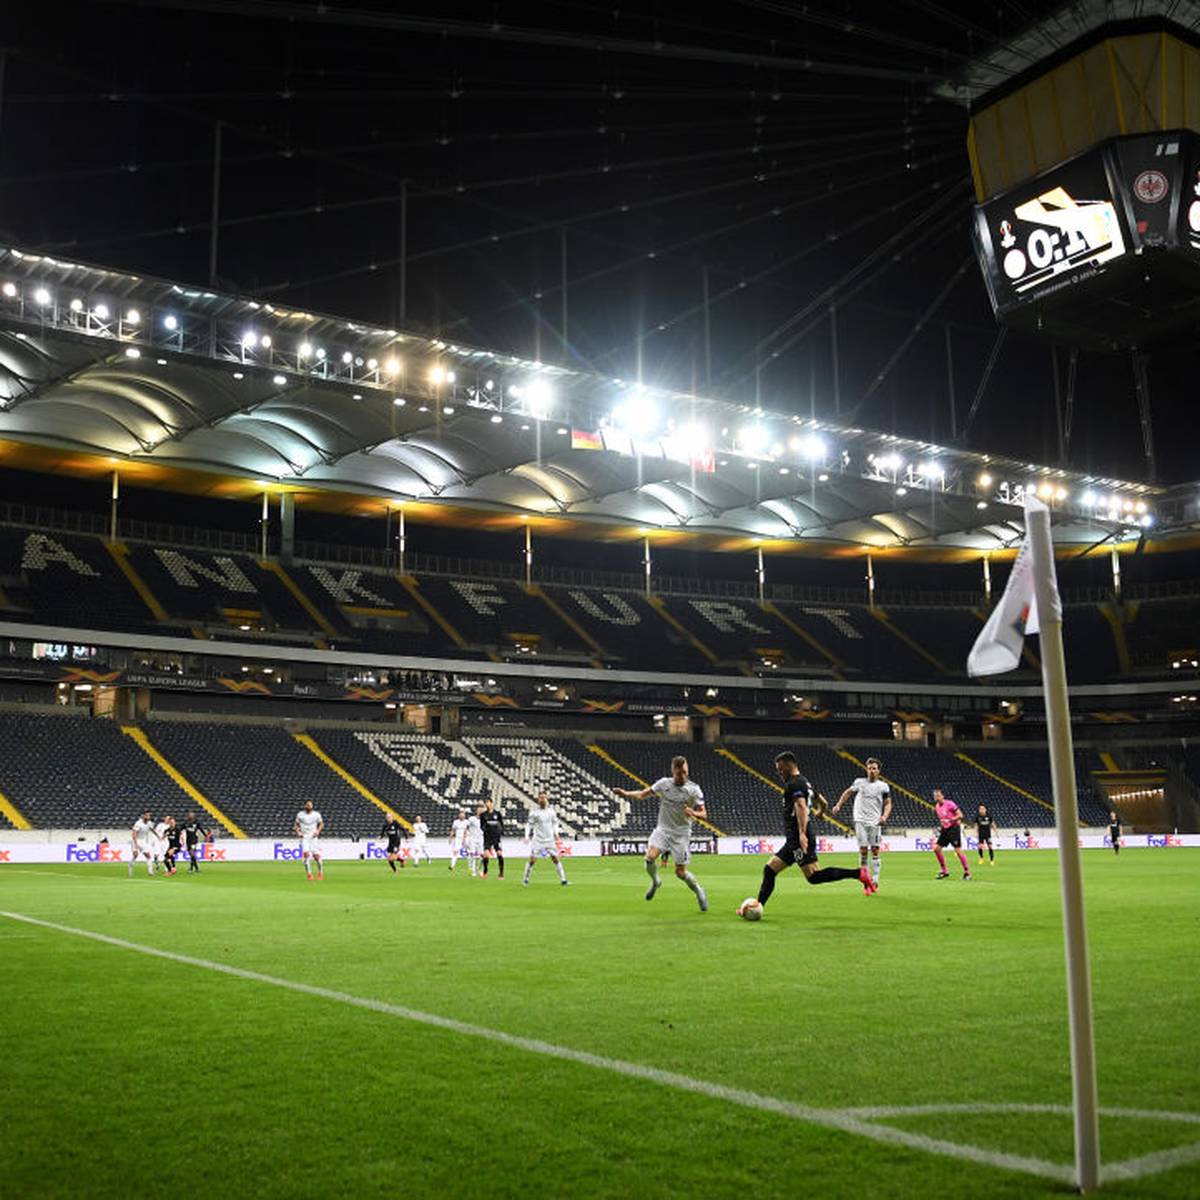 Eintracht Frankfurt Hintergrunde Des Stadion Deals Mit Der Deutschen Bank